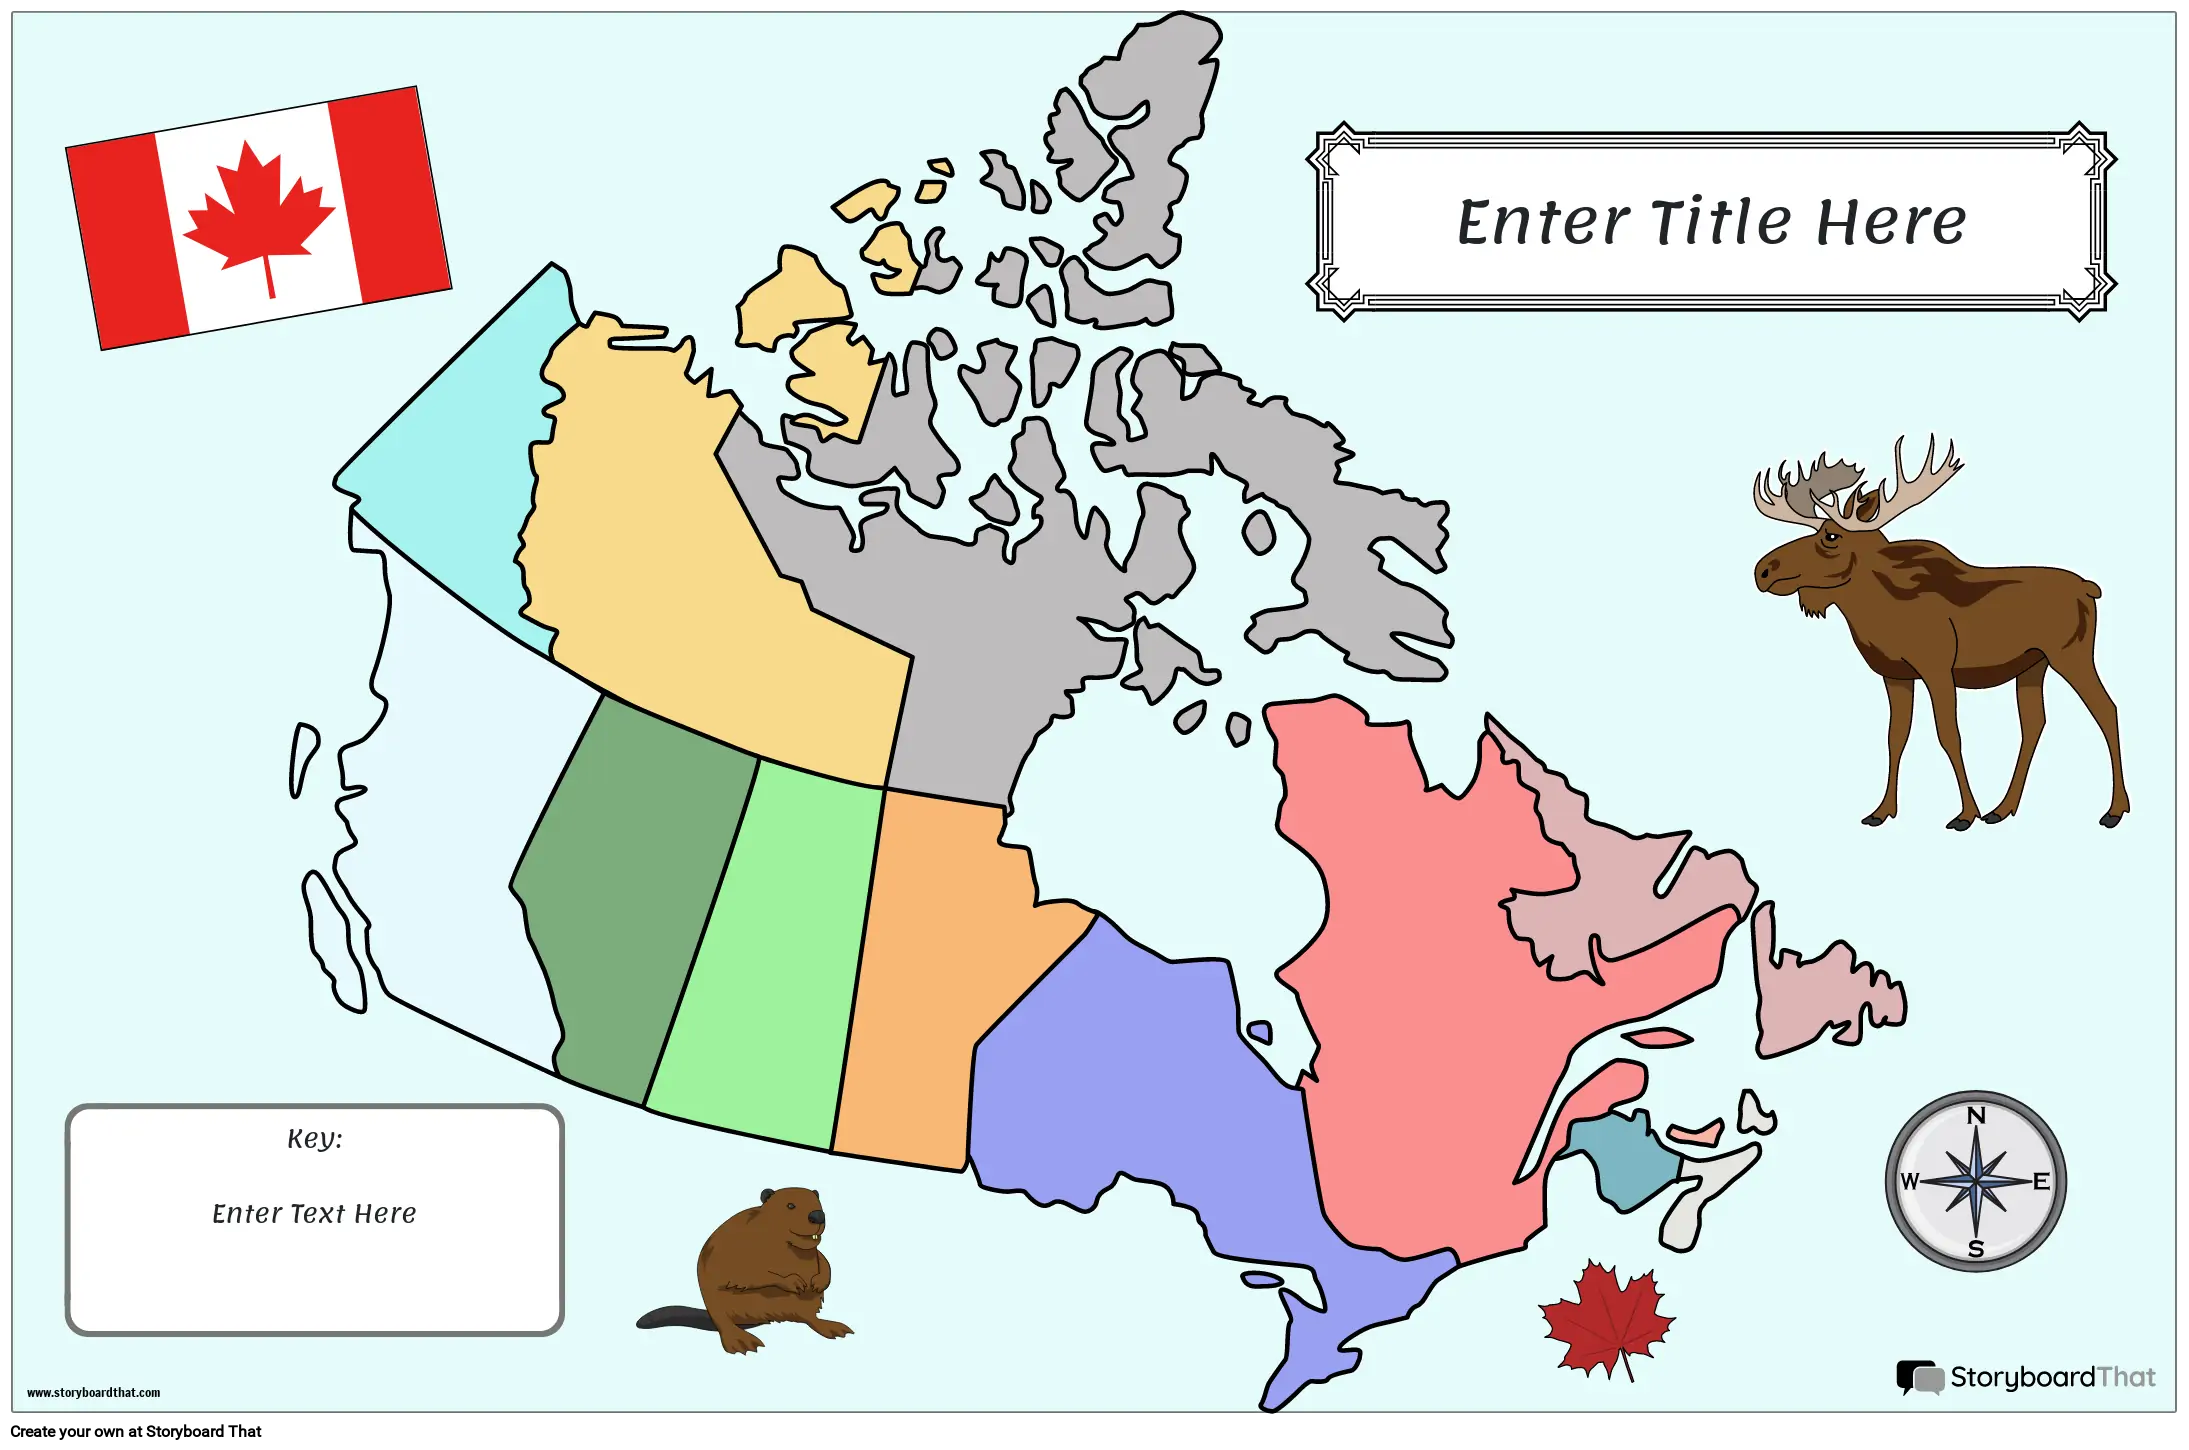 नक्शा पोस्टर 26 रंग लैंडस्केप कनाडा